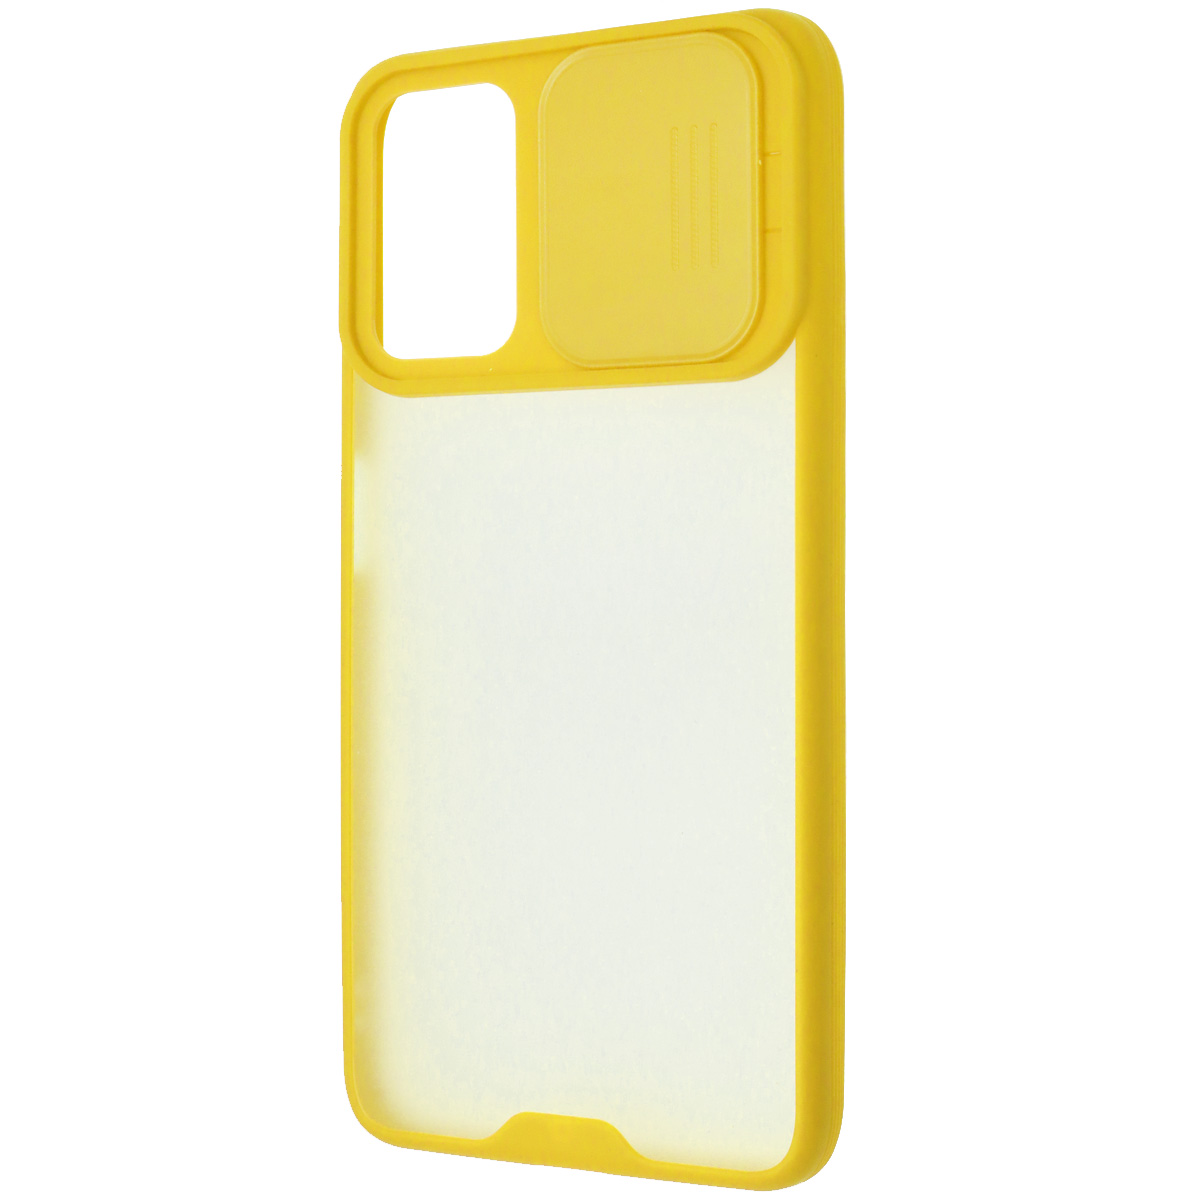 Чехол накладка LIFE TIME для XIAOMI POCO M3, силикон, пластик, матовый, со шторкой для защиты задней камеры, цвет окантовки желтый